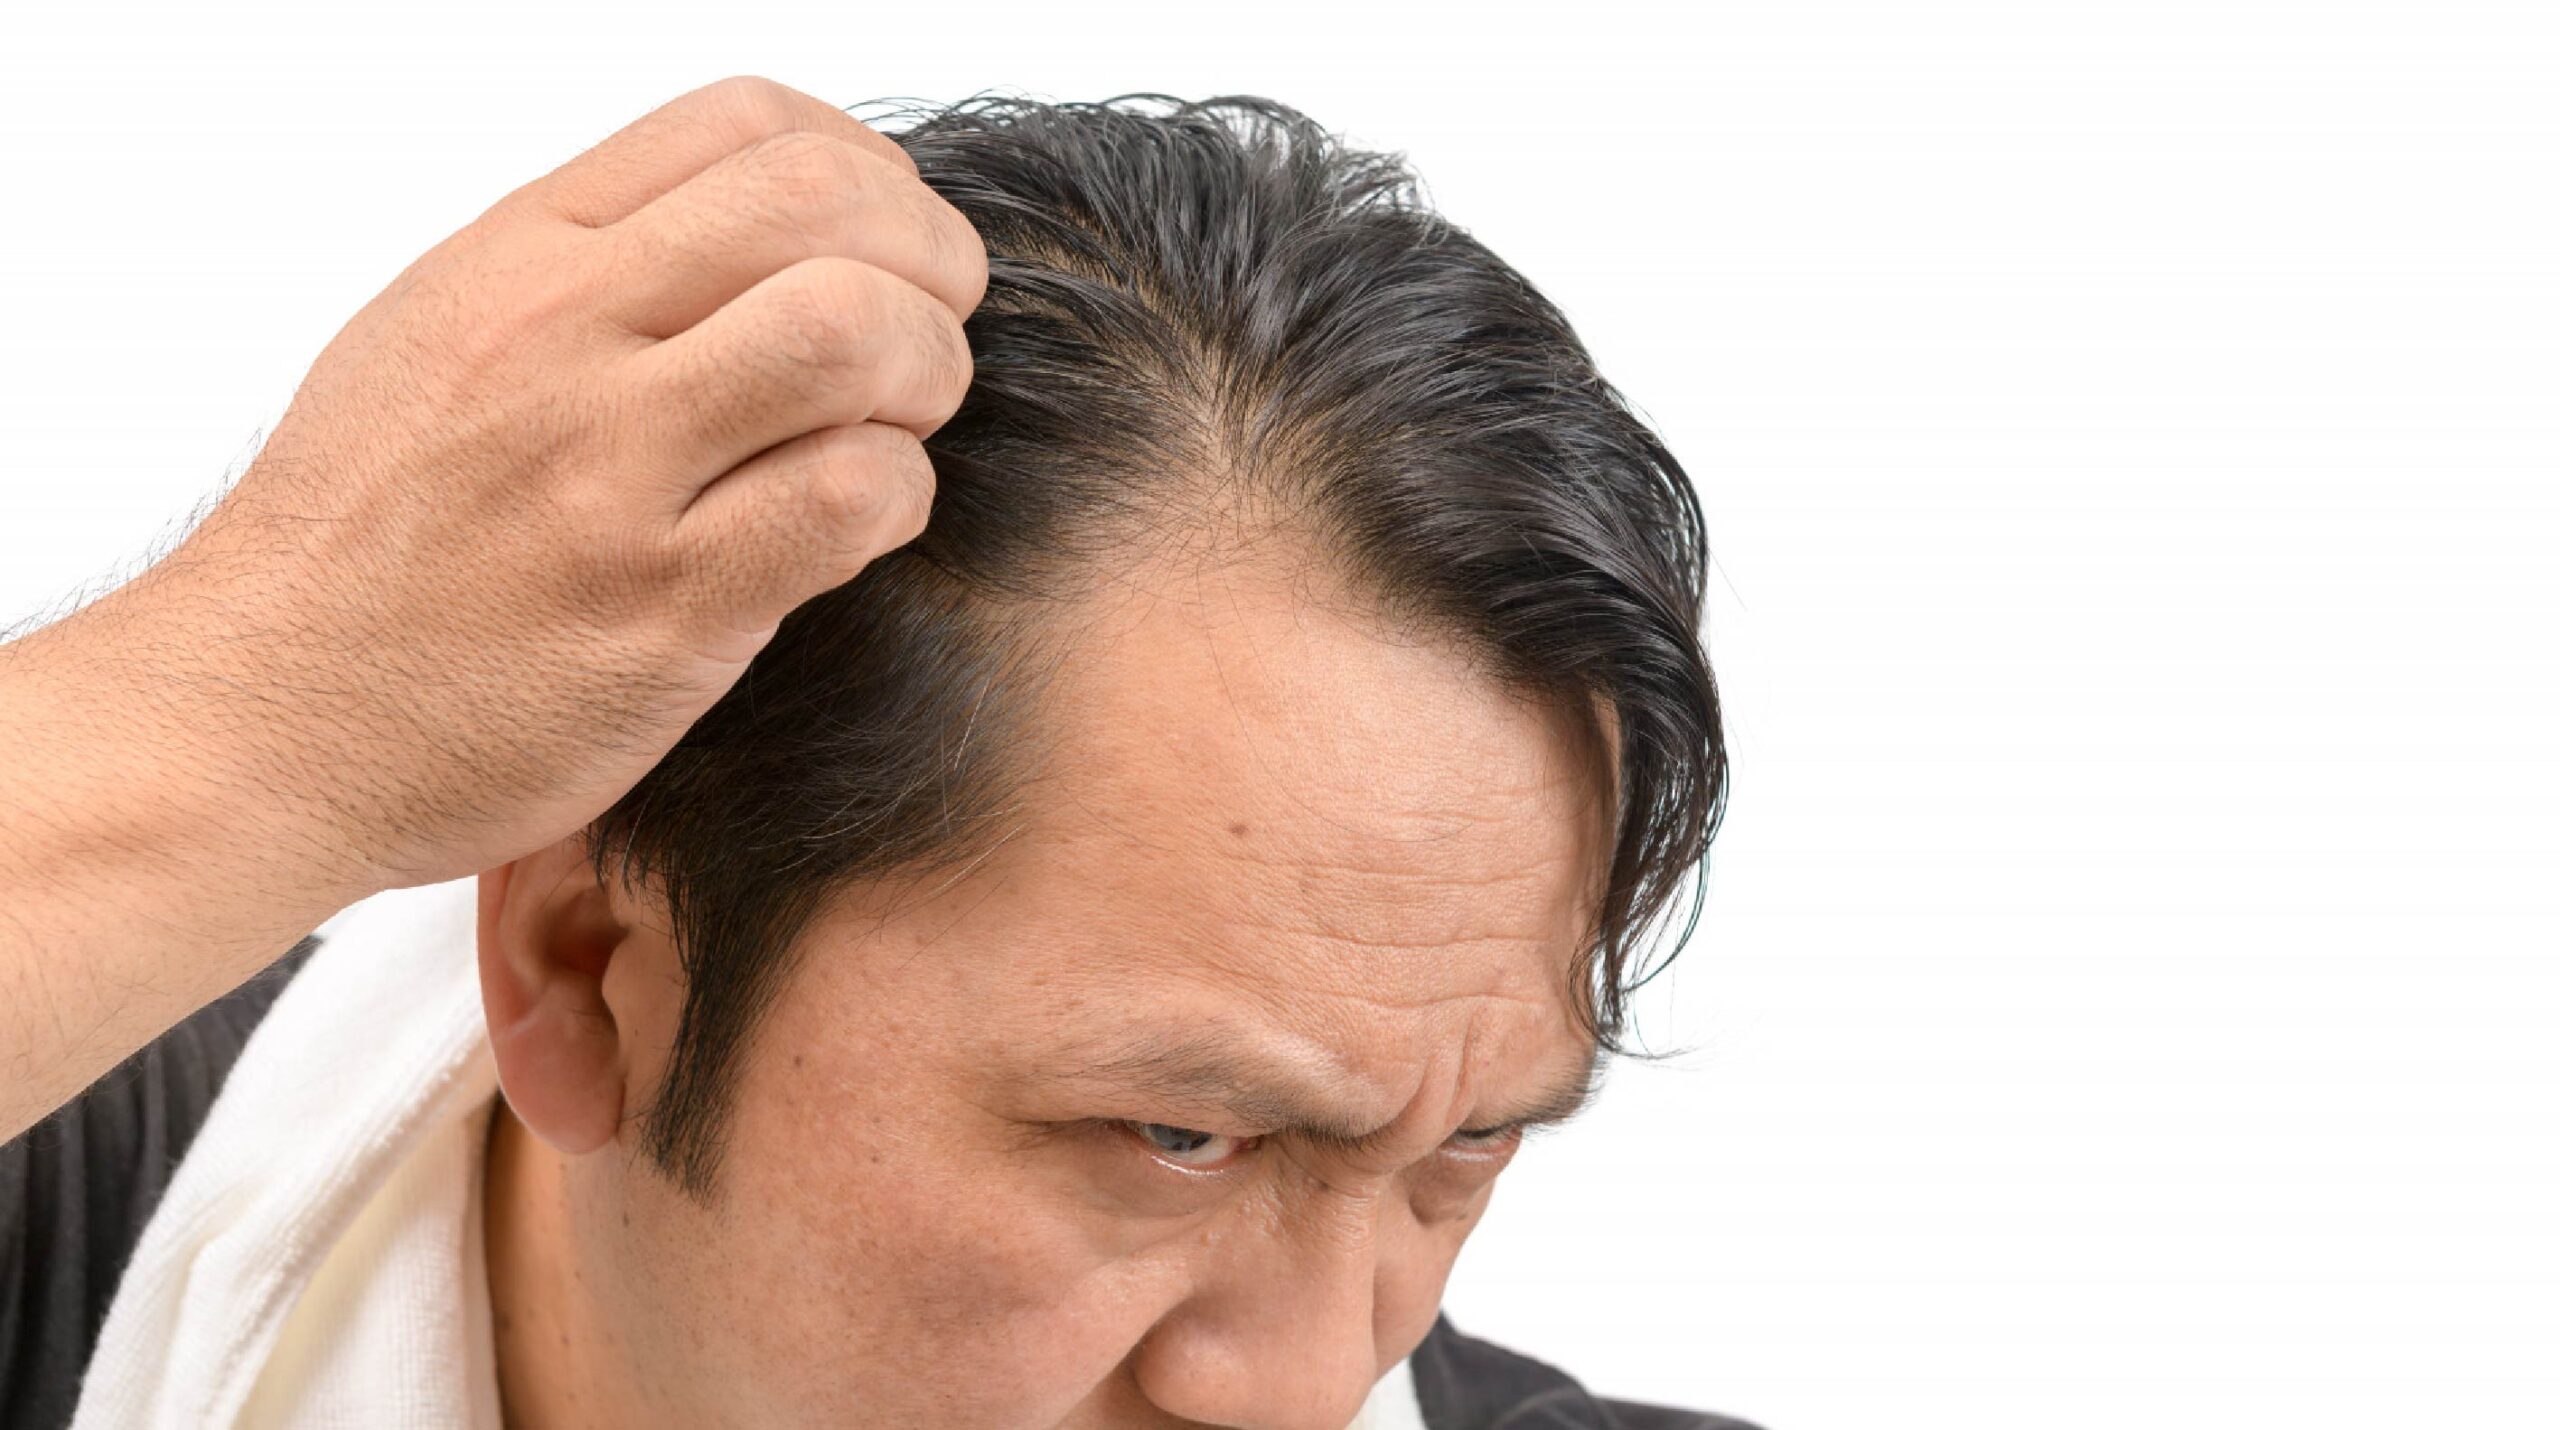 Male Pattern Baldness – Hair Loss in Men